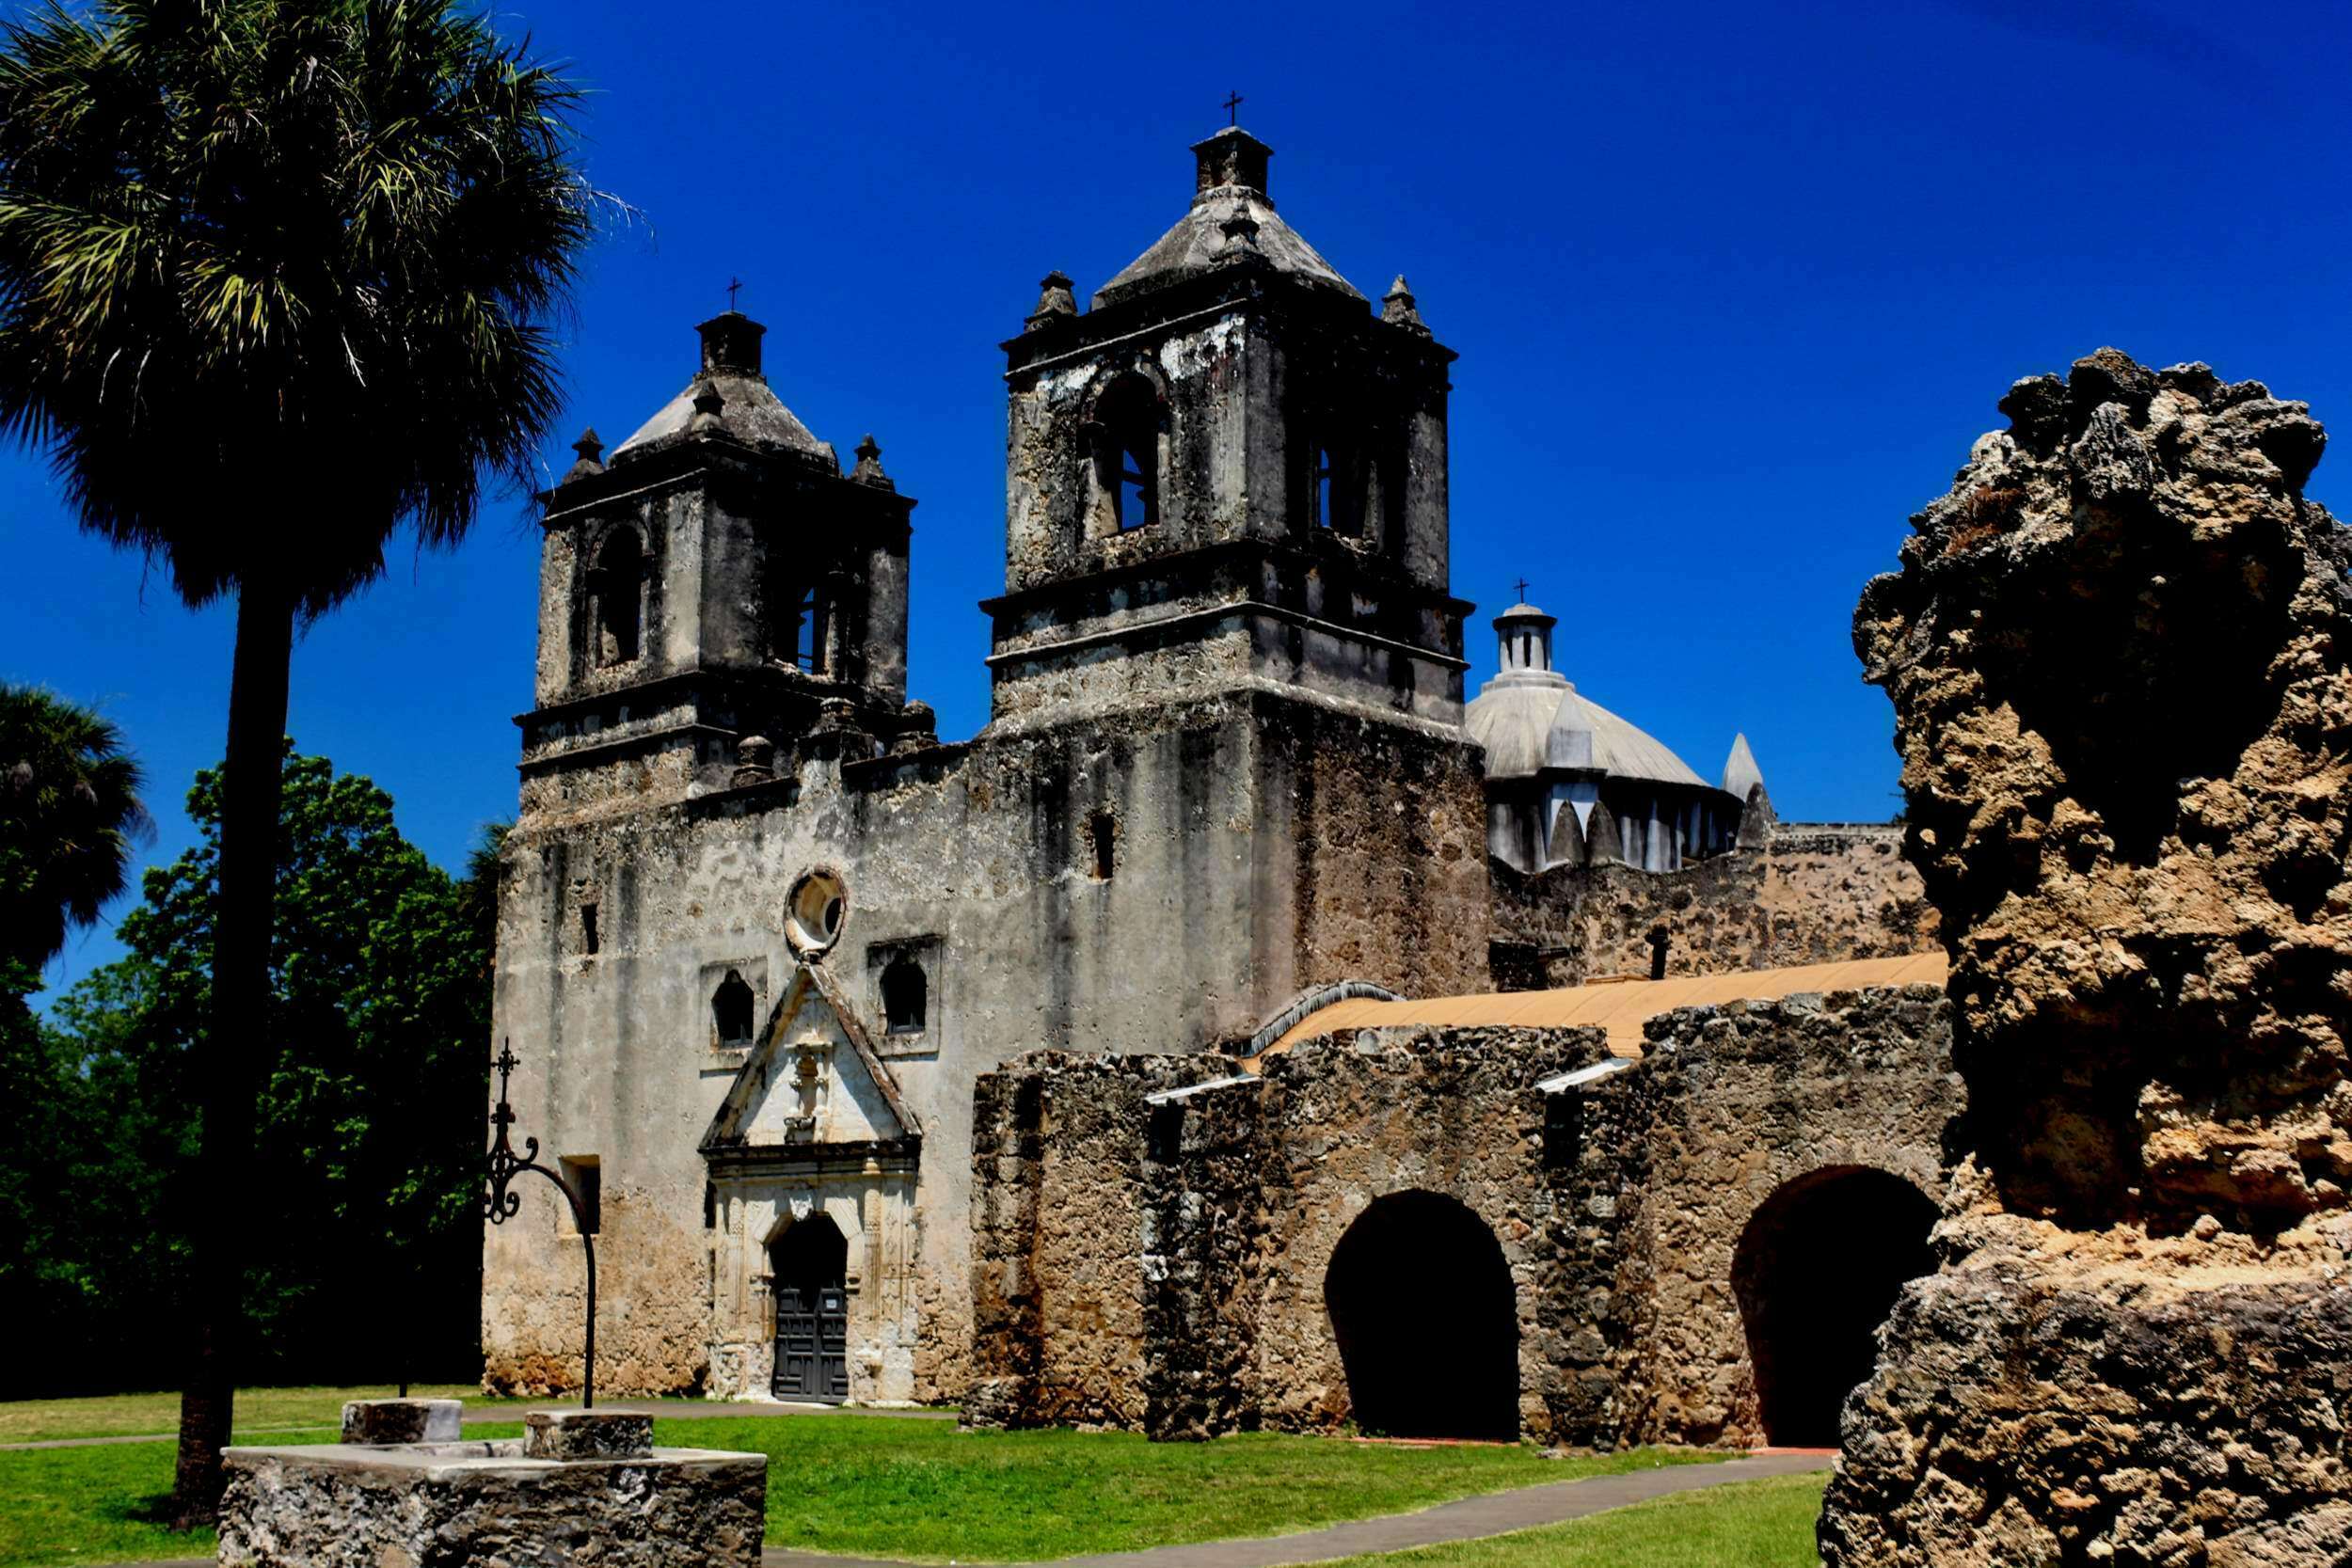 San Antonio Mission Concepcion